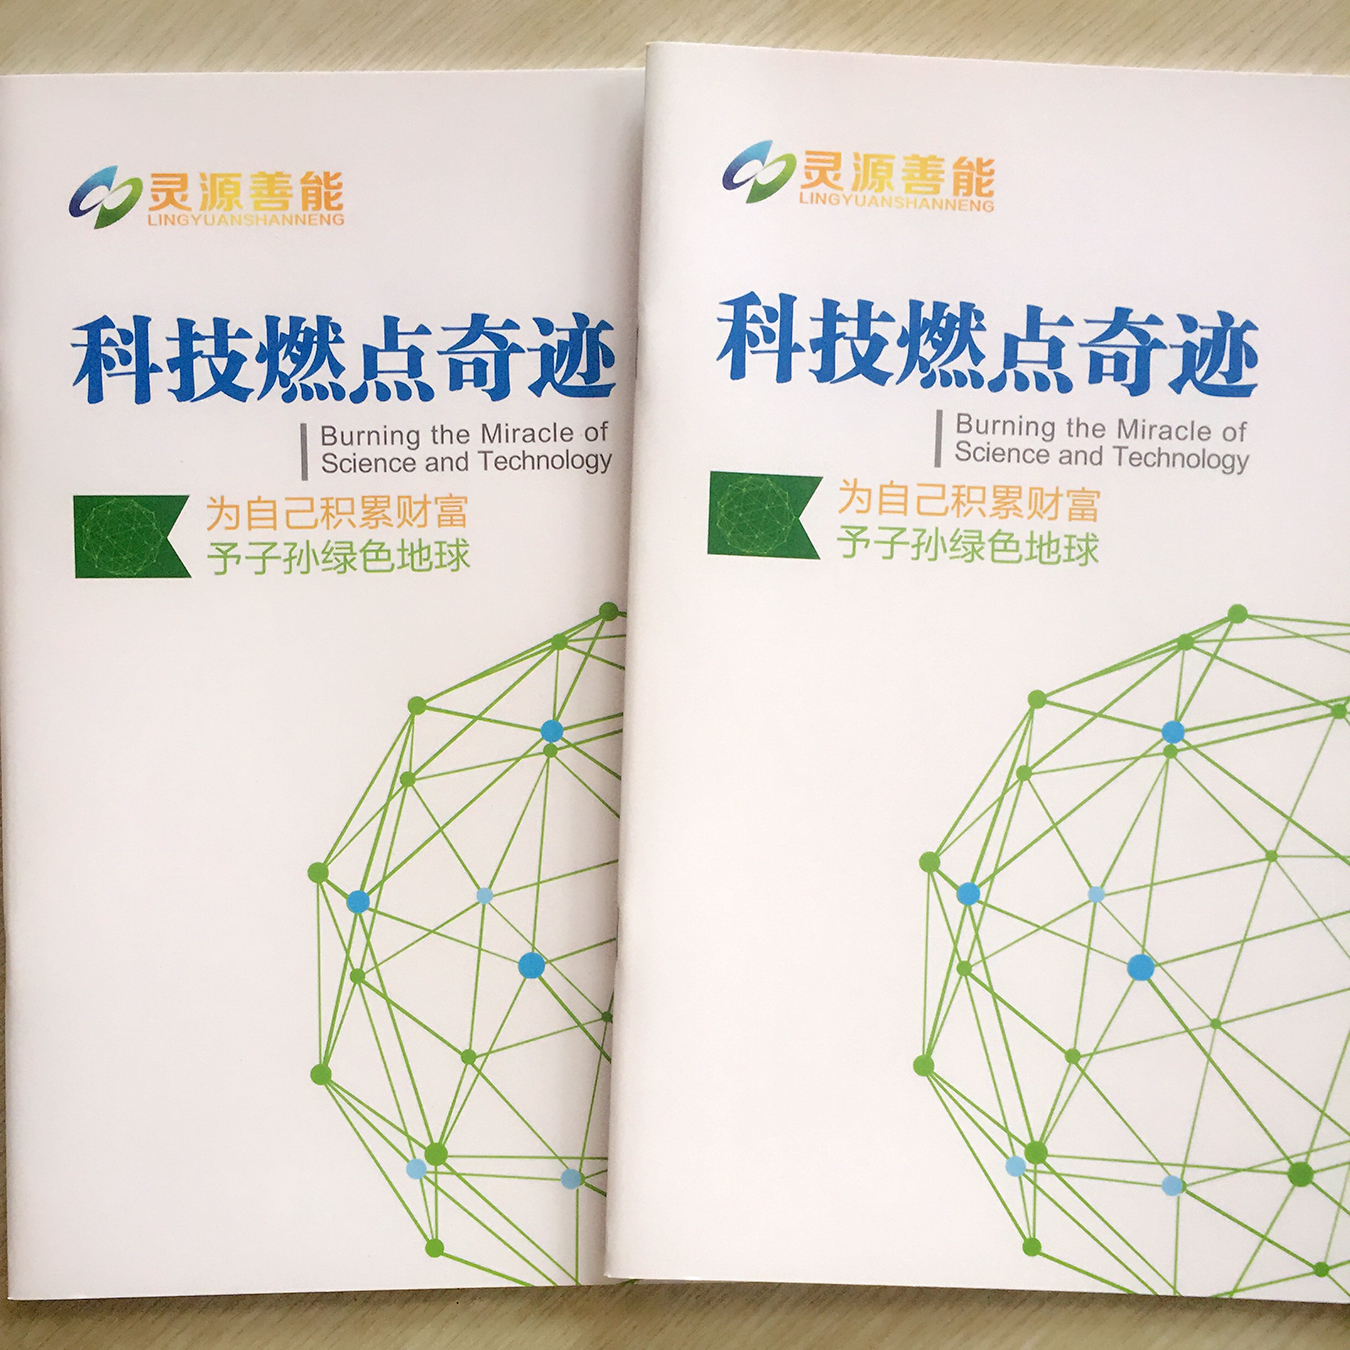 画册印刷|企业画册印刷—北京新源环态环保科技选择豪彩佳印!